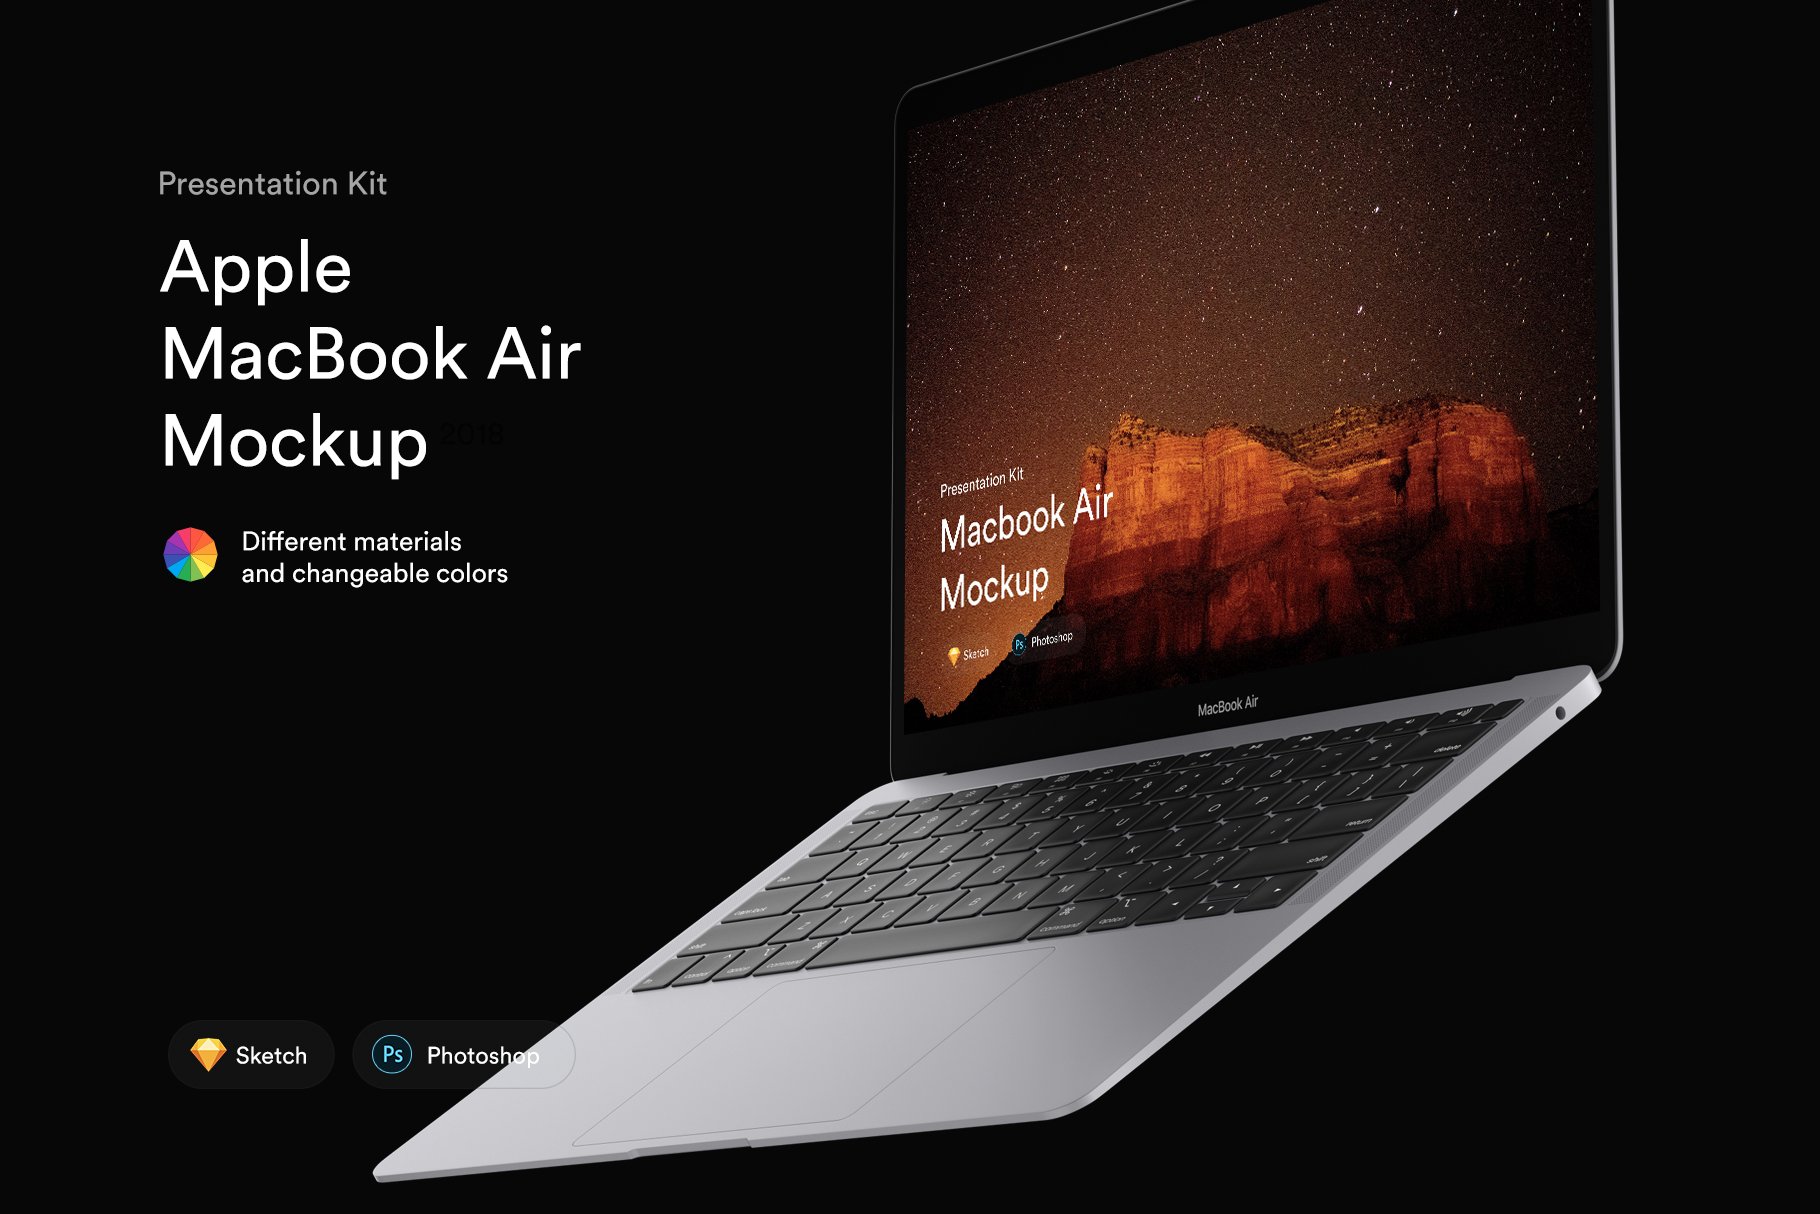 MacBook Air Mockups (2018) | PK cover image.